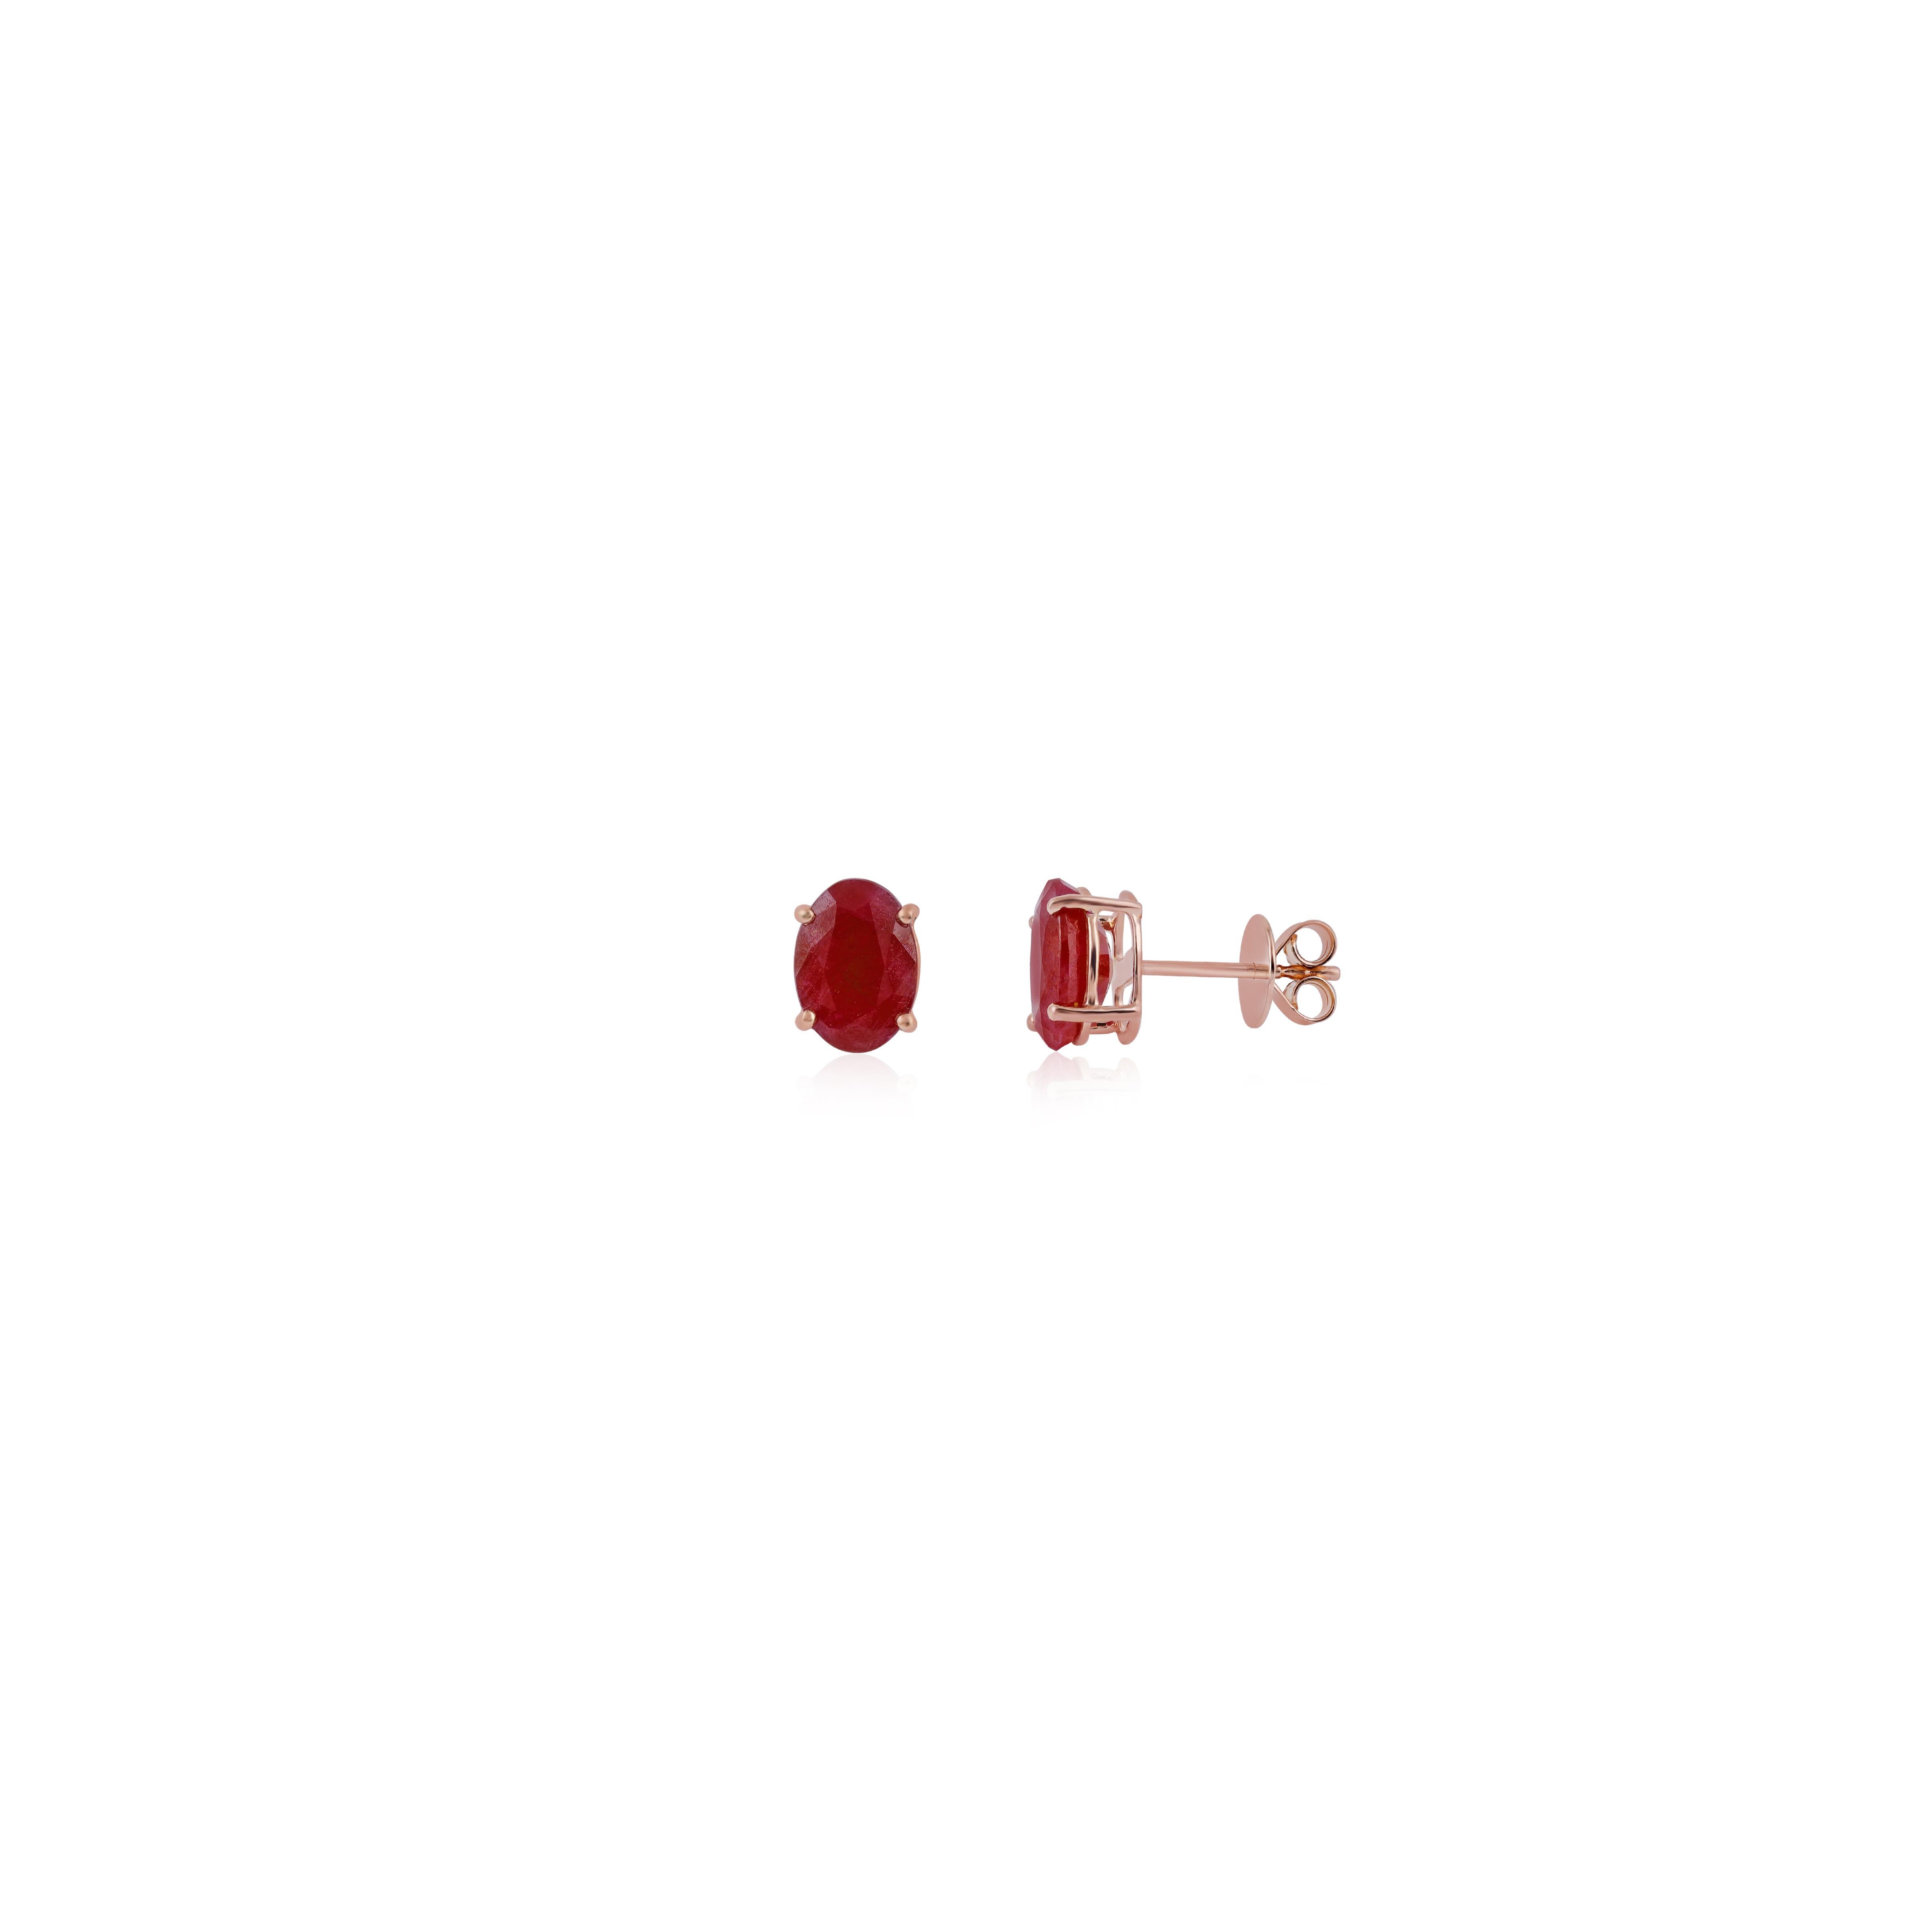 Oval Cut Clear Burma  Ruby Earrings Studs in 18k Rose Gold For Sale